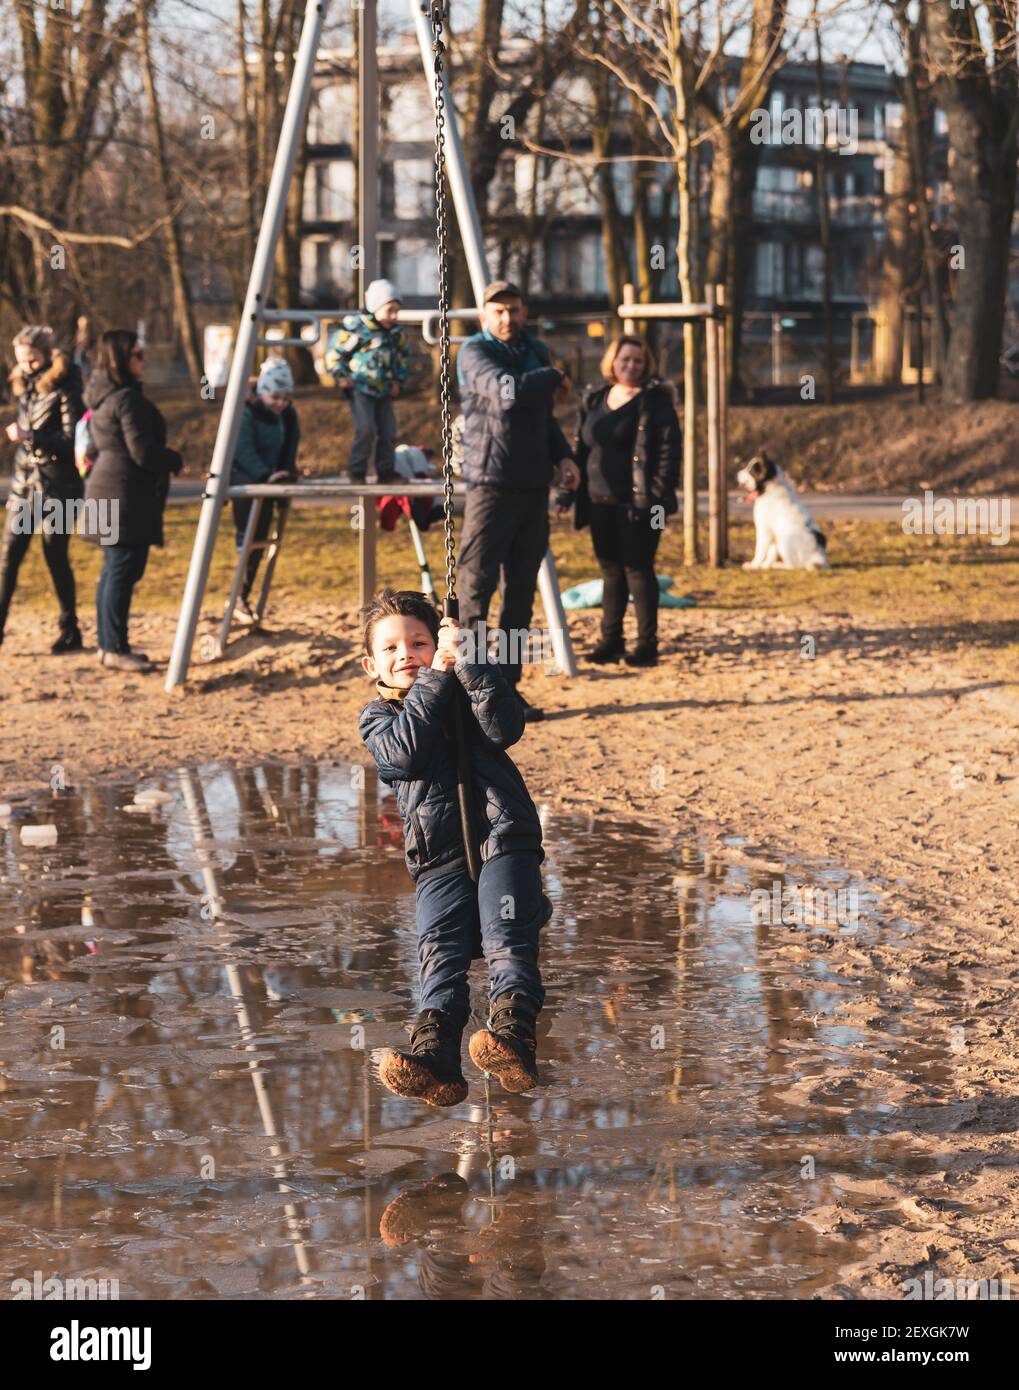 POZ, POLONIA - 21 febbraio 2021: Giovane ragazzo caucasico polacco felice che tiene su una zipline attrezzatura in un parco giochi nel Solacki parco con grande acqua puddle Foto Stock